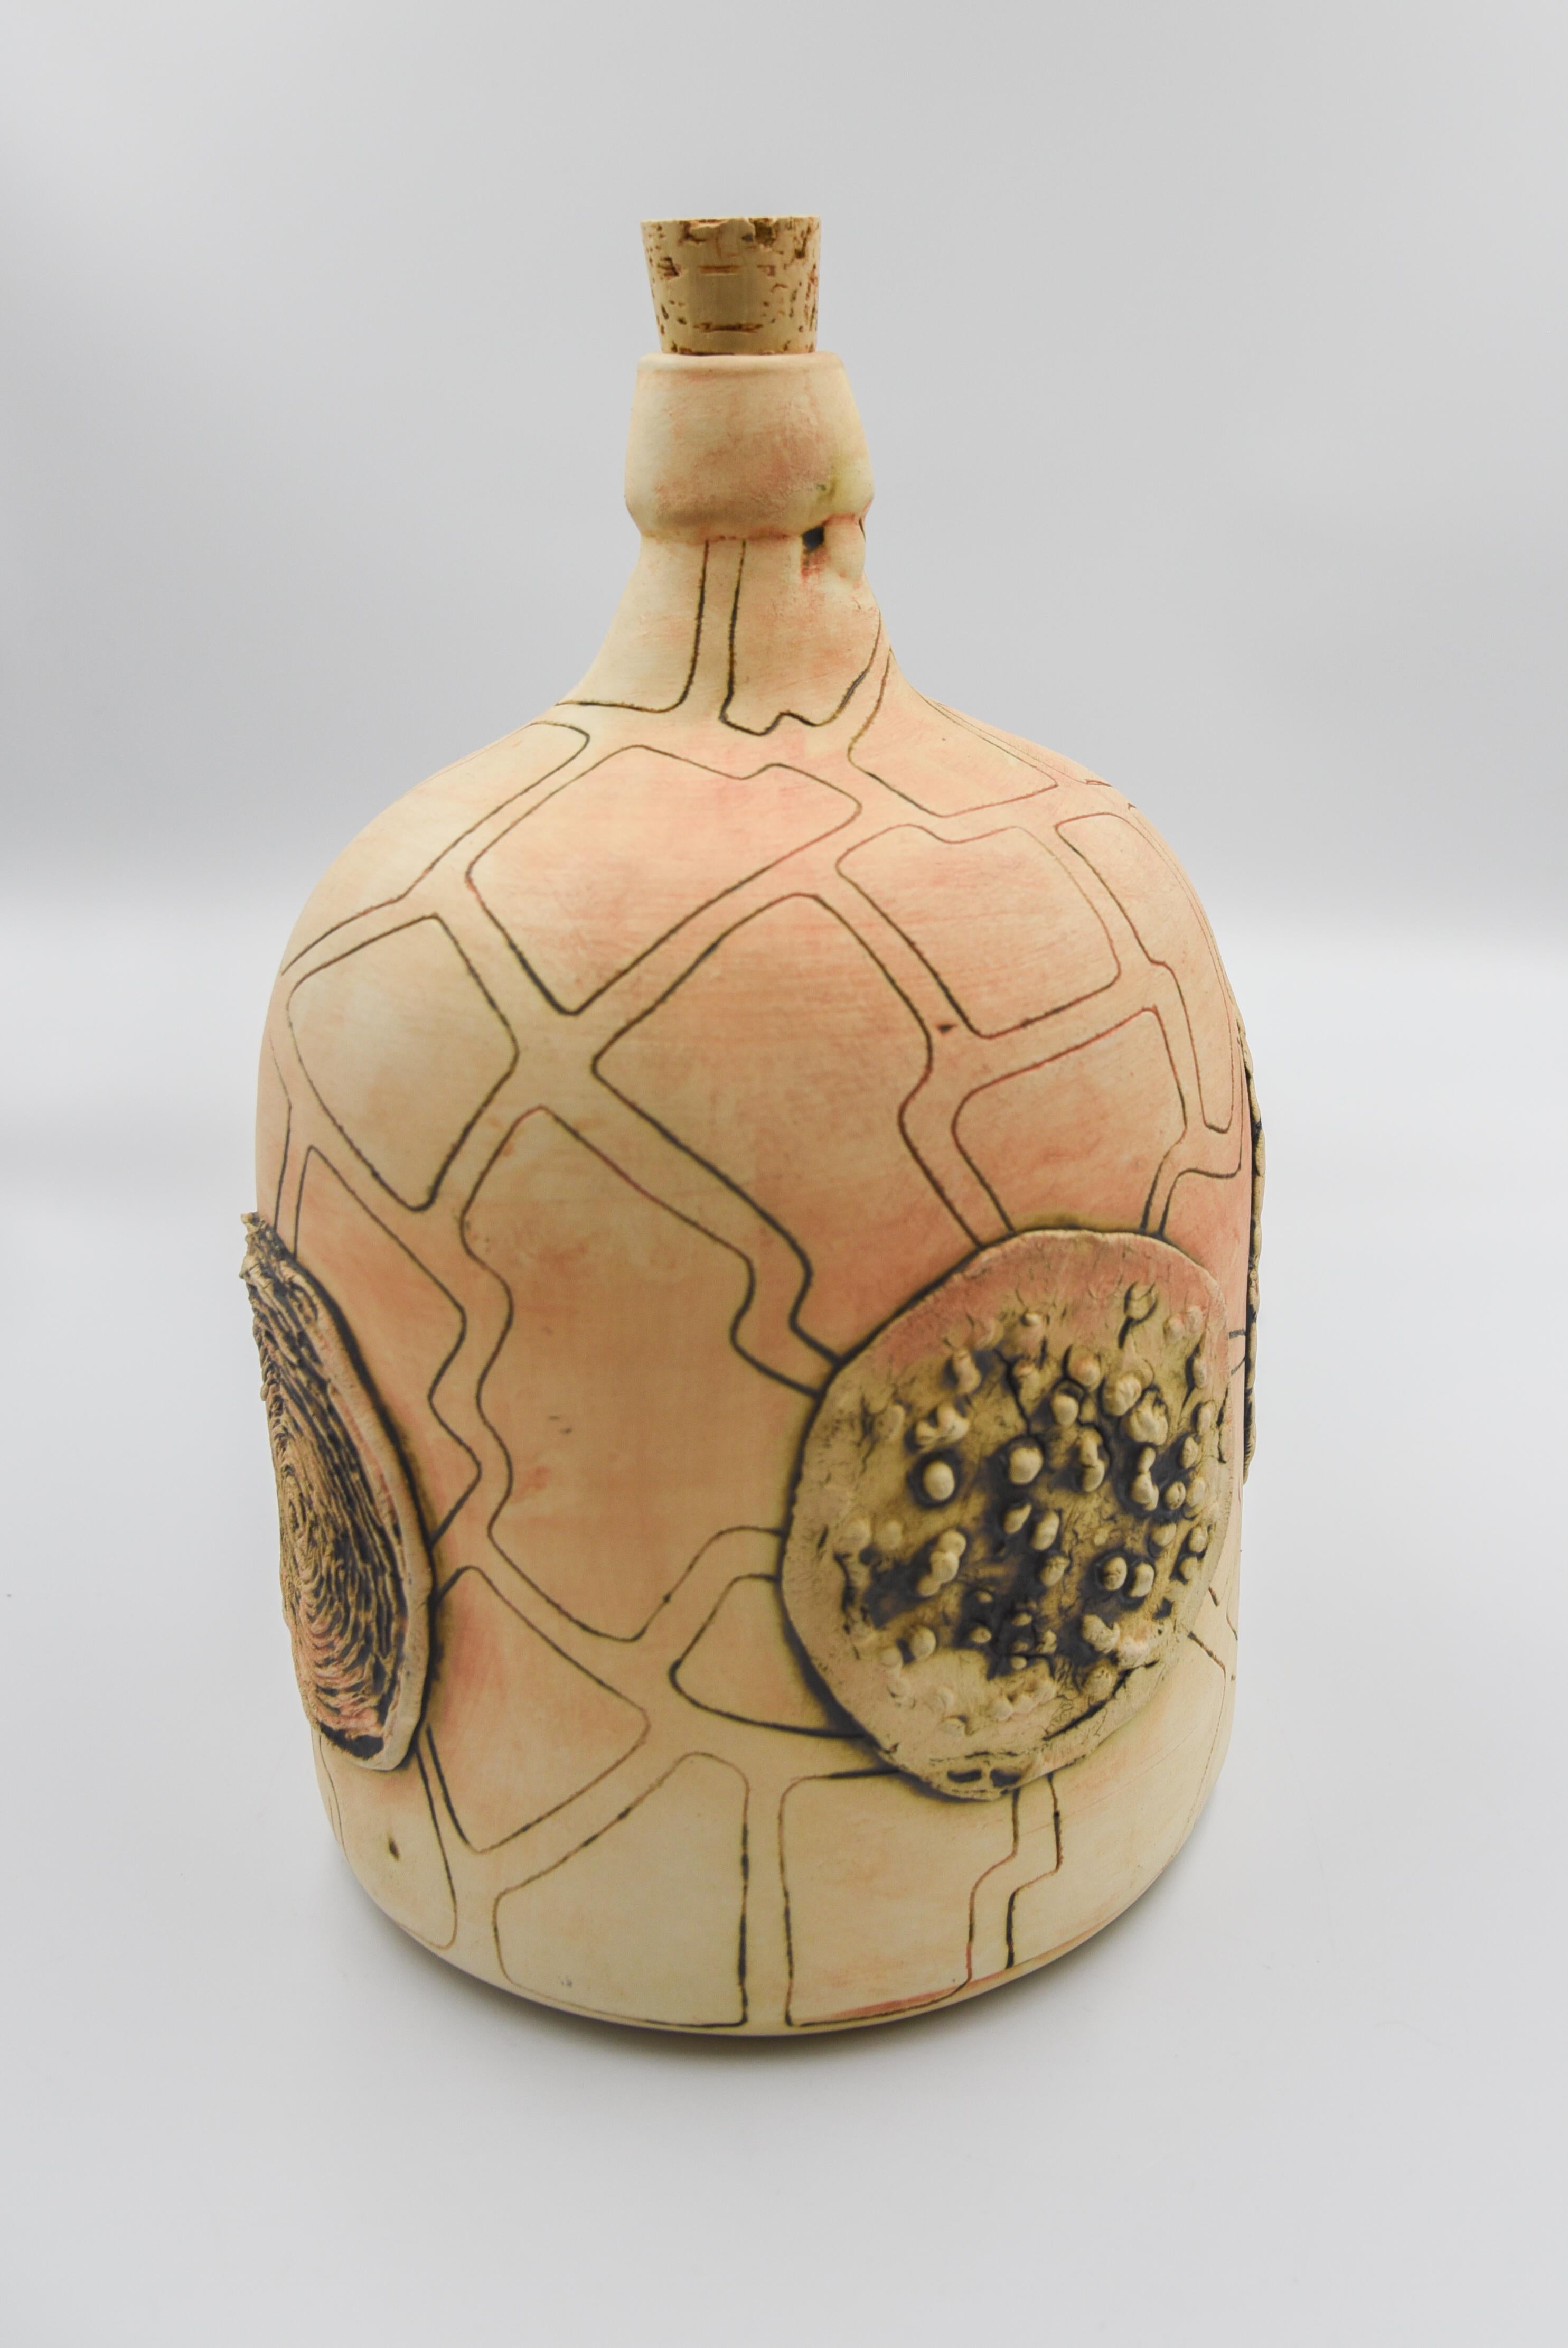 Diese rustikale Mezcalflasche ist eine Nachbildung einer antiken Flasche oder eines Demijohns, der zur Aufbewahrung von Mezcal verwendet wurde, der bei Volkstheatern in Oaxaca, Mexiko, getrunken wurde. Die Flasche ist mit der keramischen